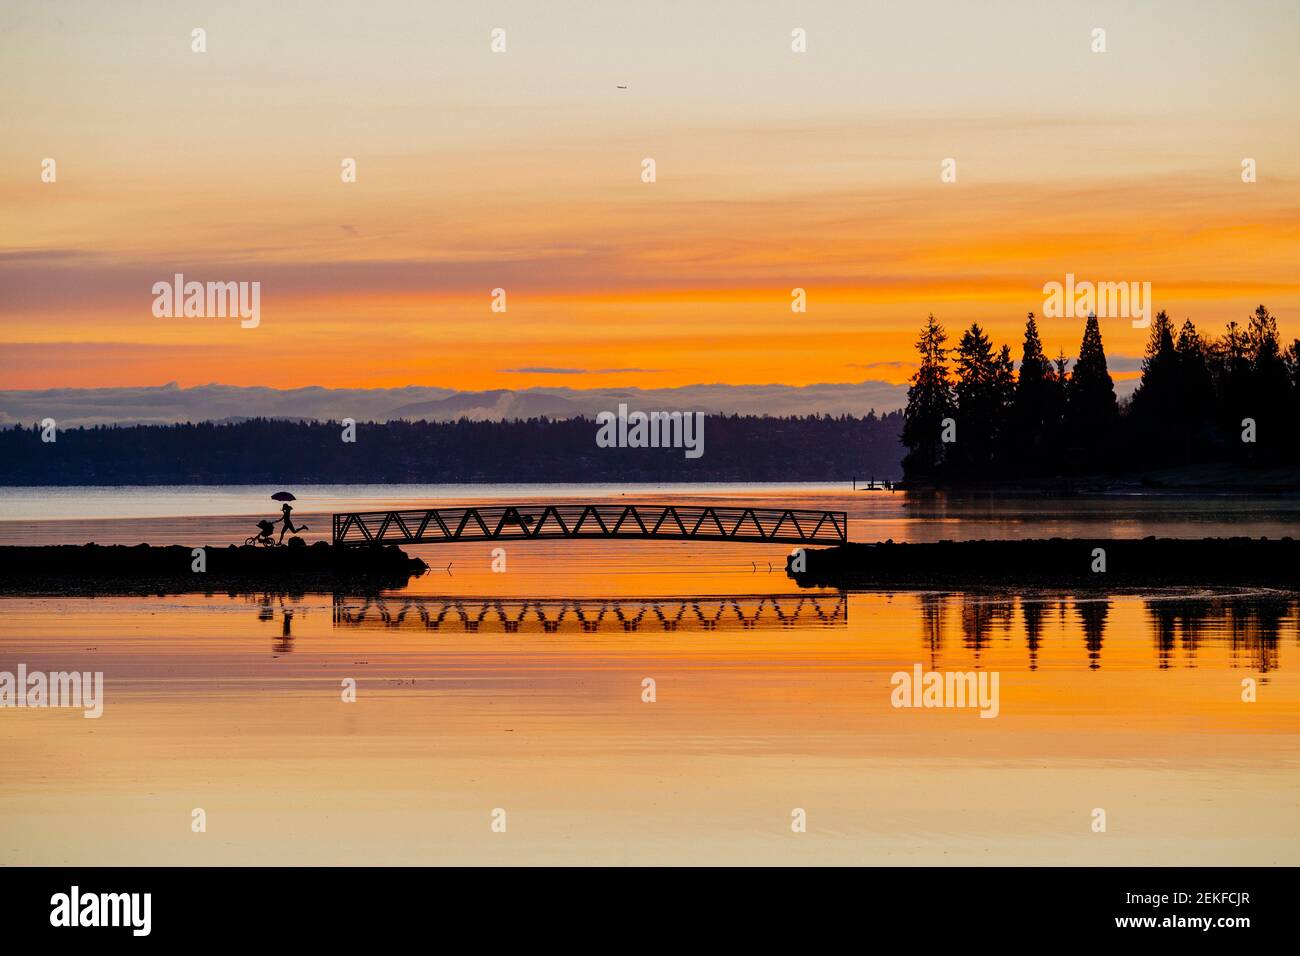 Port Blakely Bridge at sunrise, Bainbridge Island, Washington, USA Stock Photo